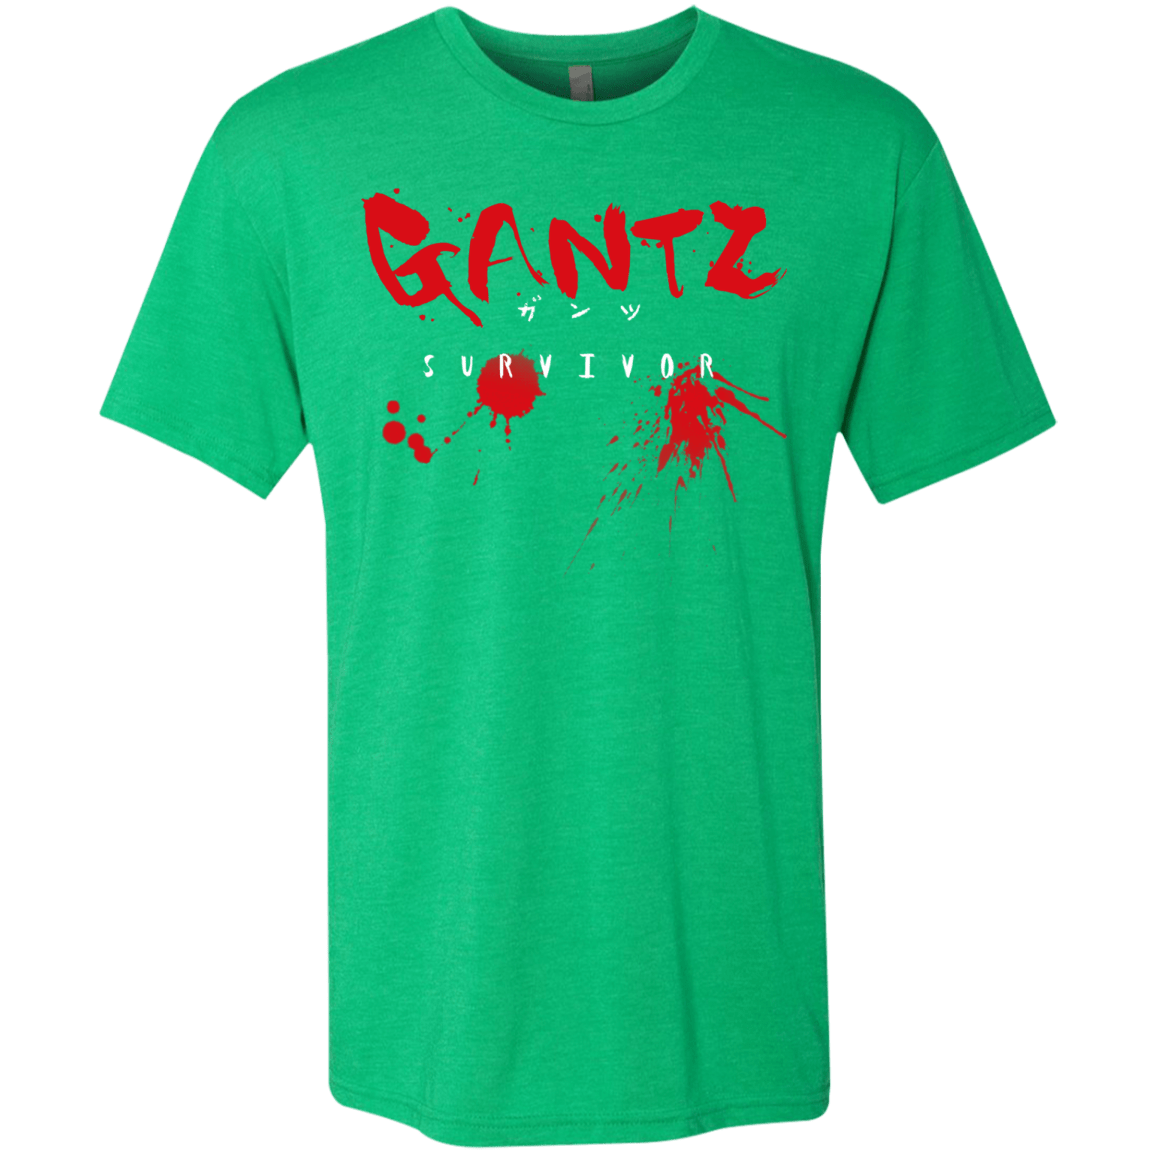 T-Shirts Envy / S Gantz Survivor Men's Triblend T-Shirt